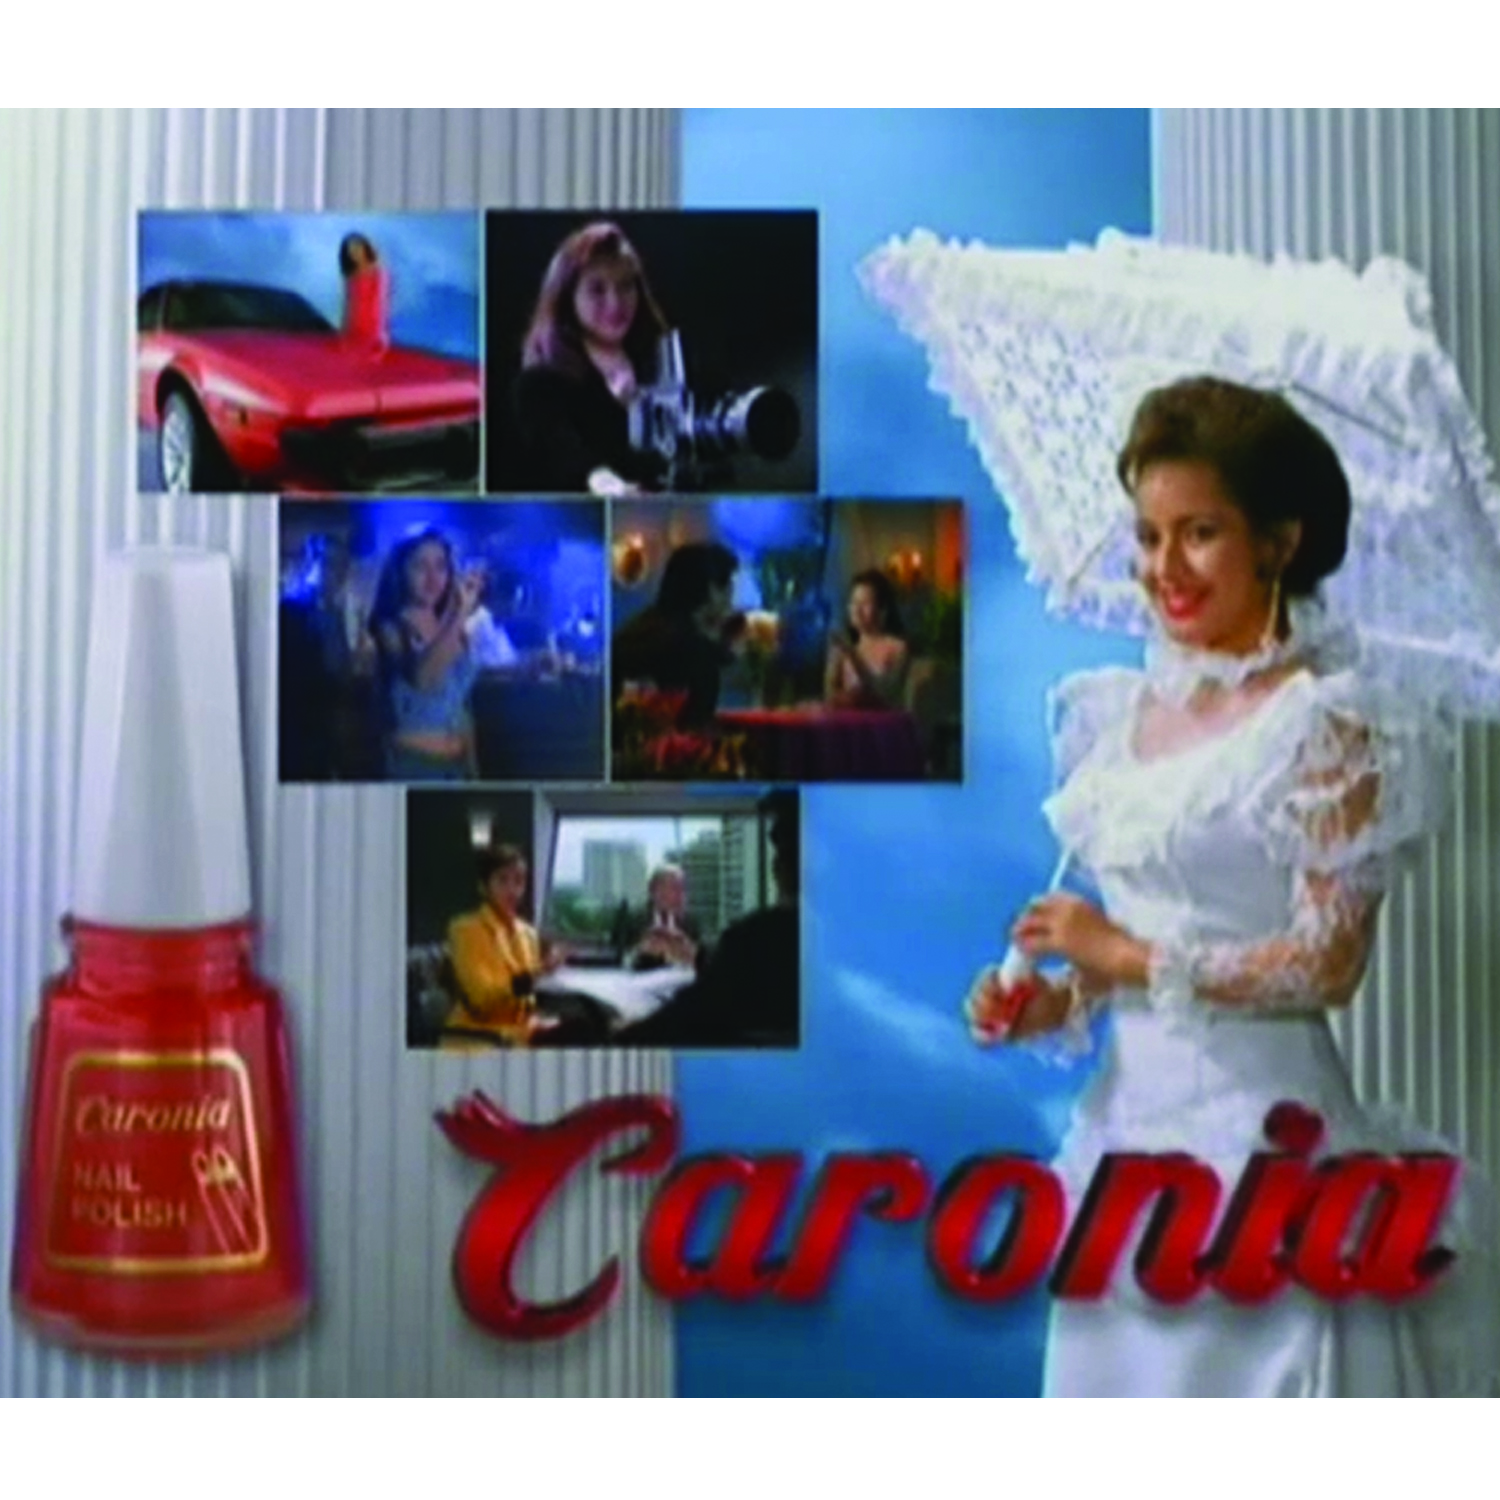 caronia 1990s